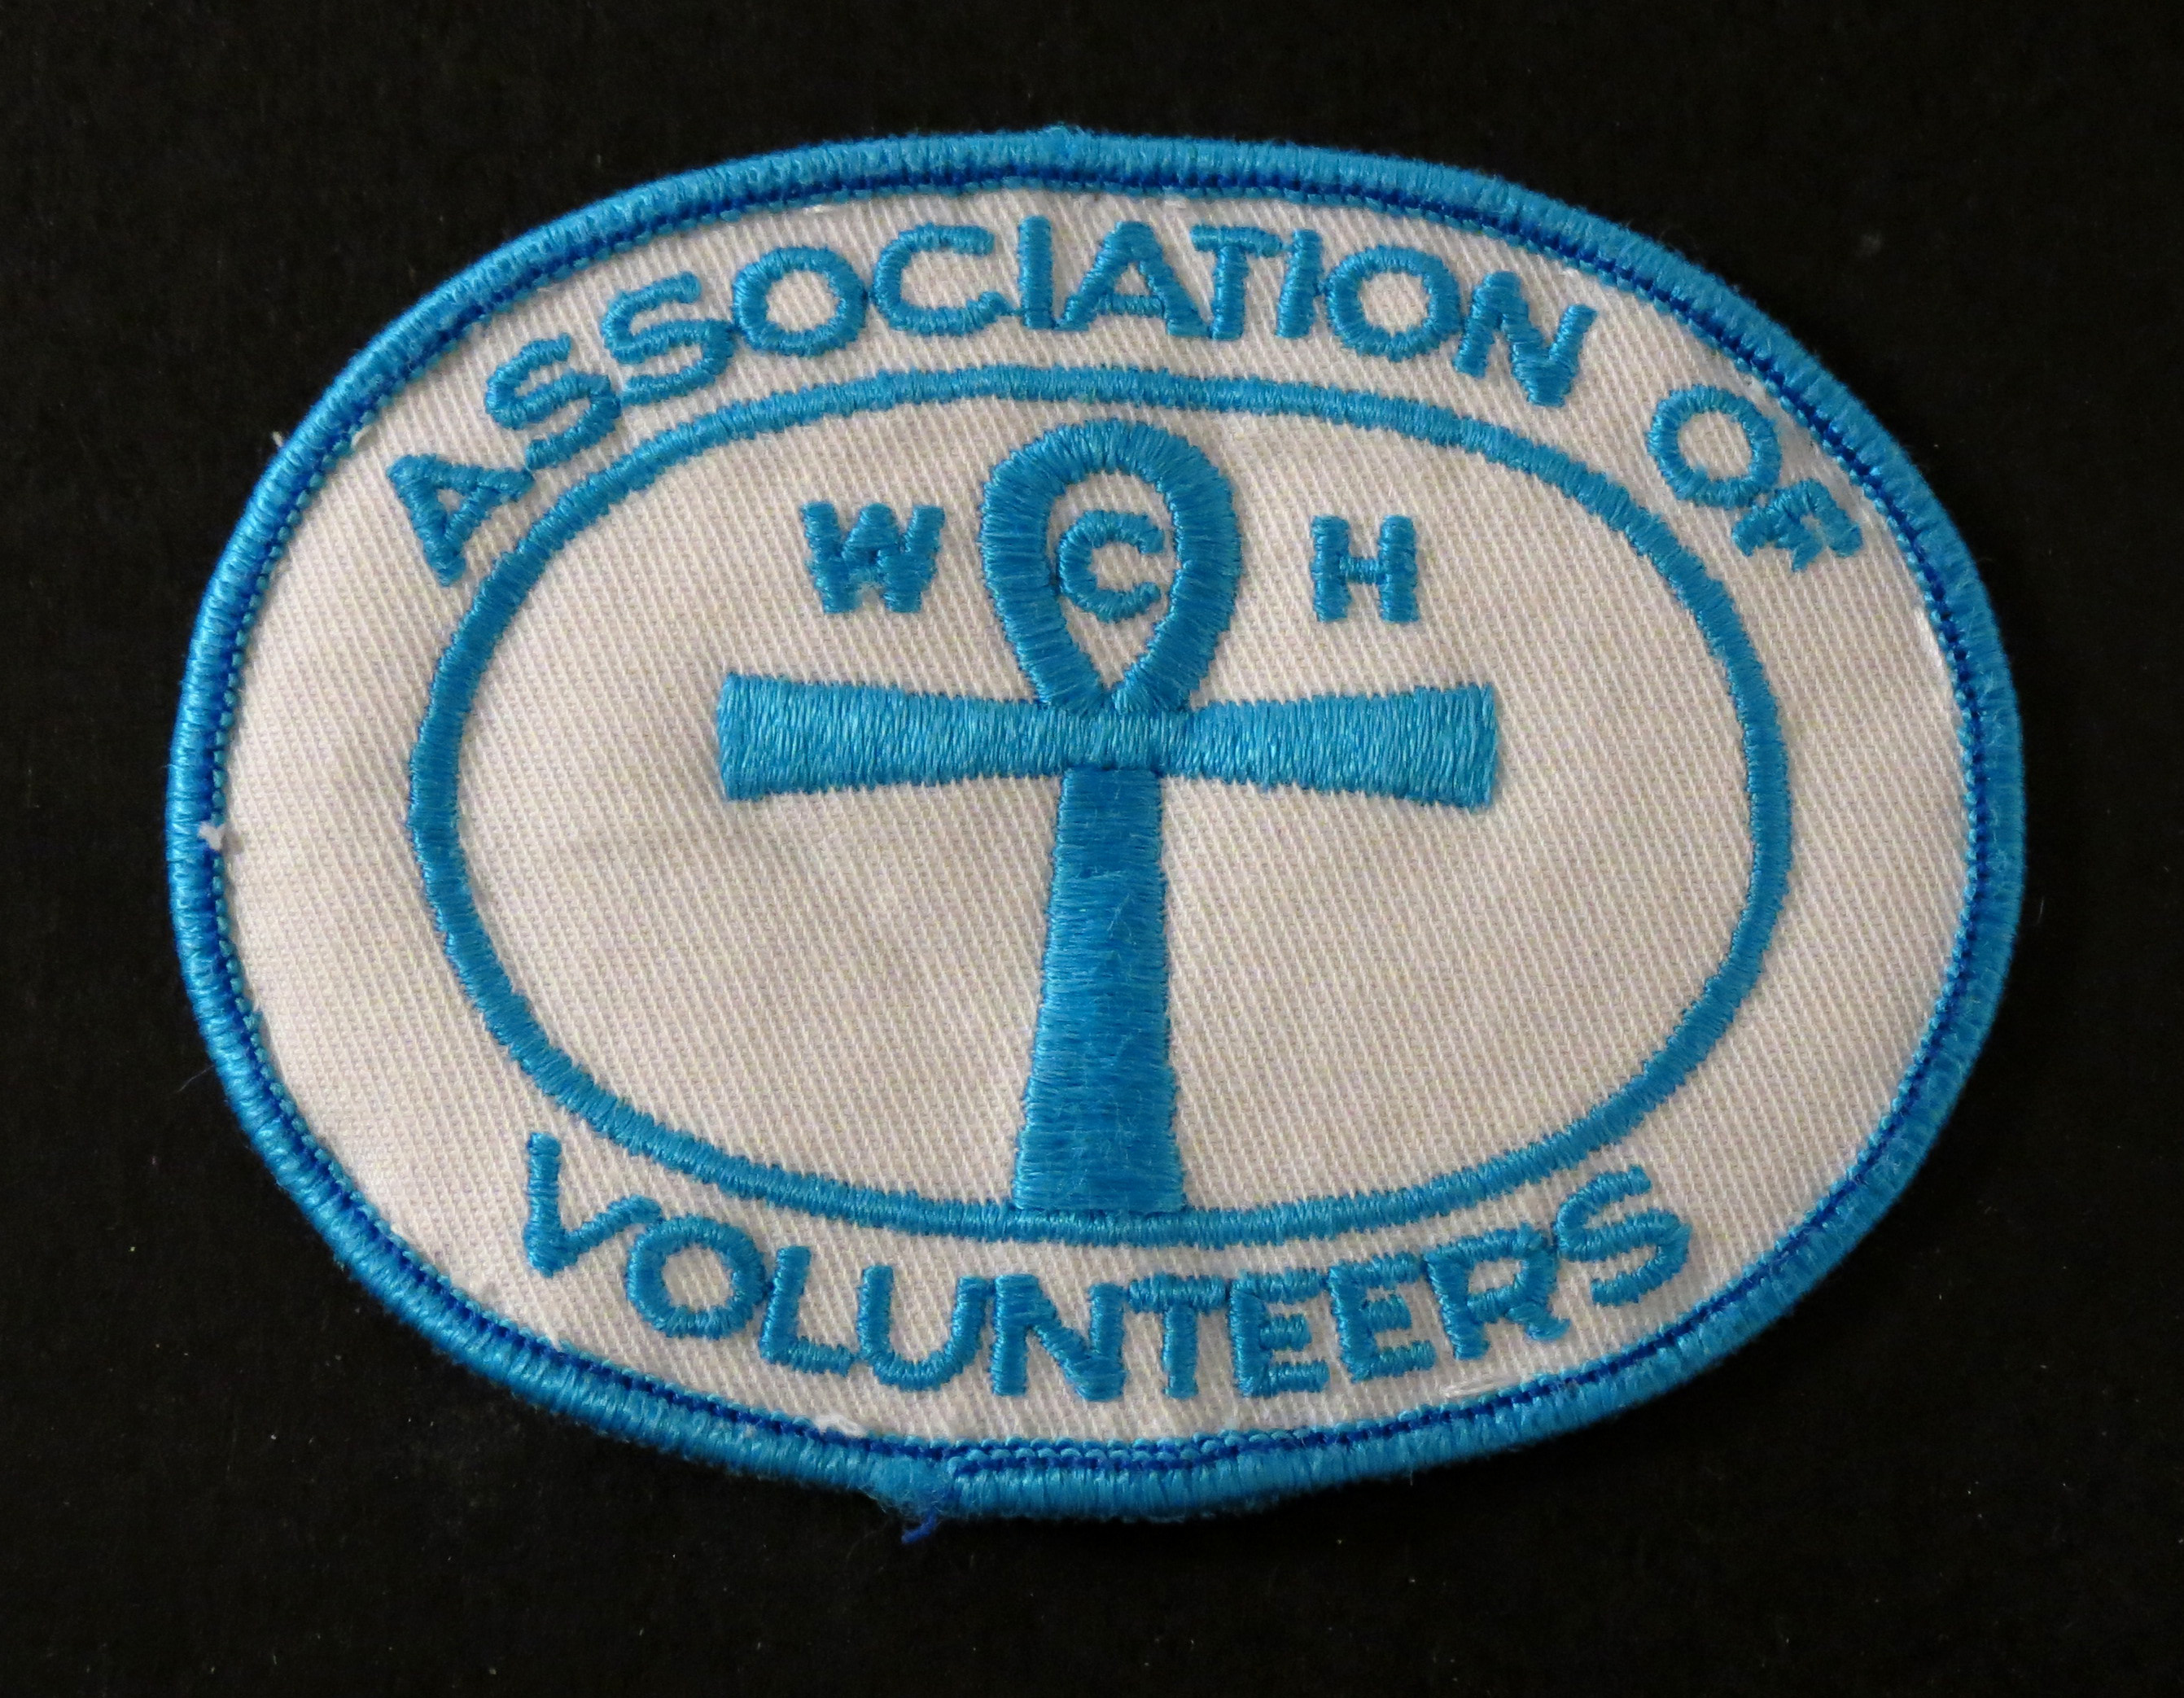 Insigne blanc avec couture bleue. Le texte dit : Association of Volunteers (Association des bénévoles)